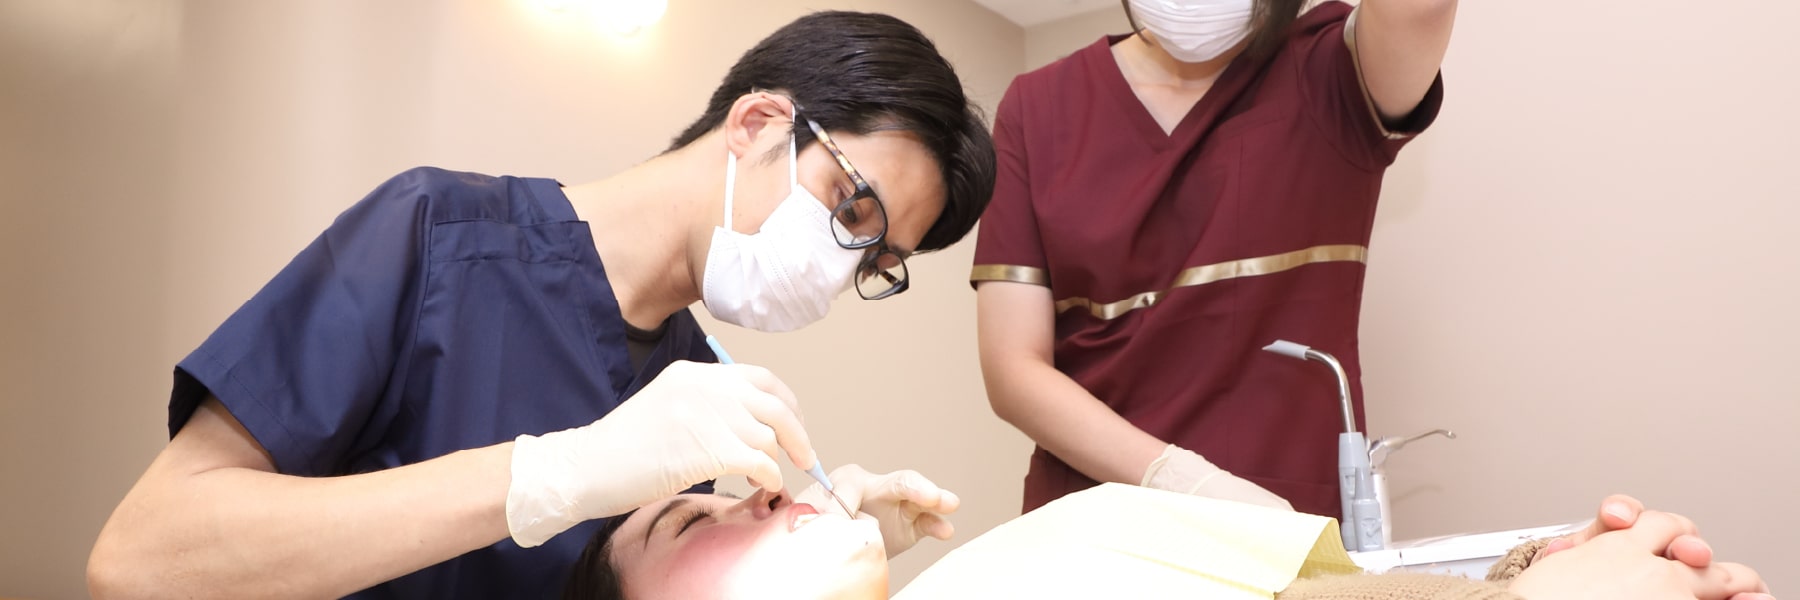 虫歯治療や審美治療も可能